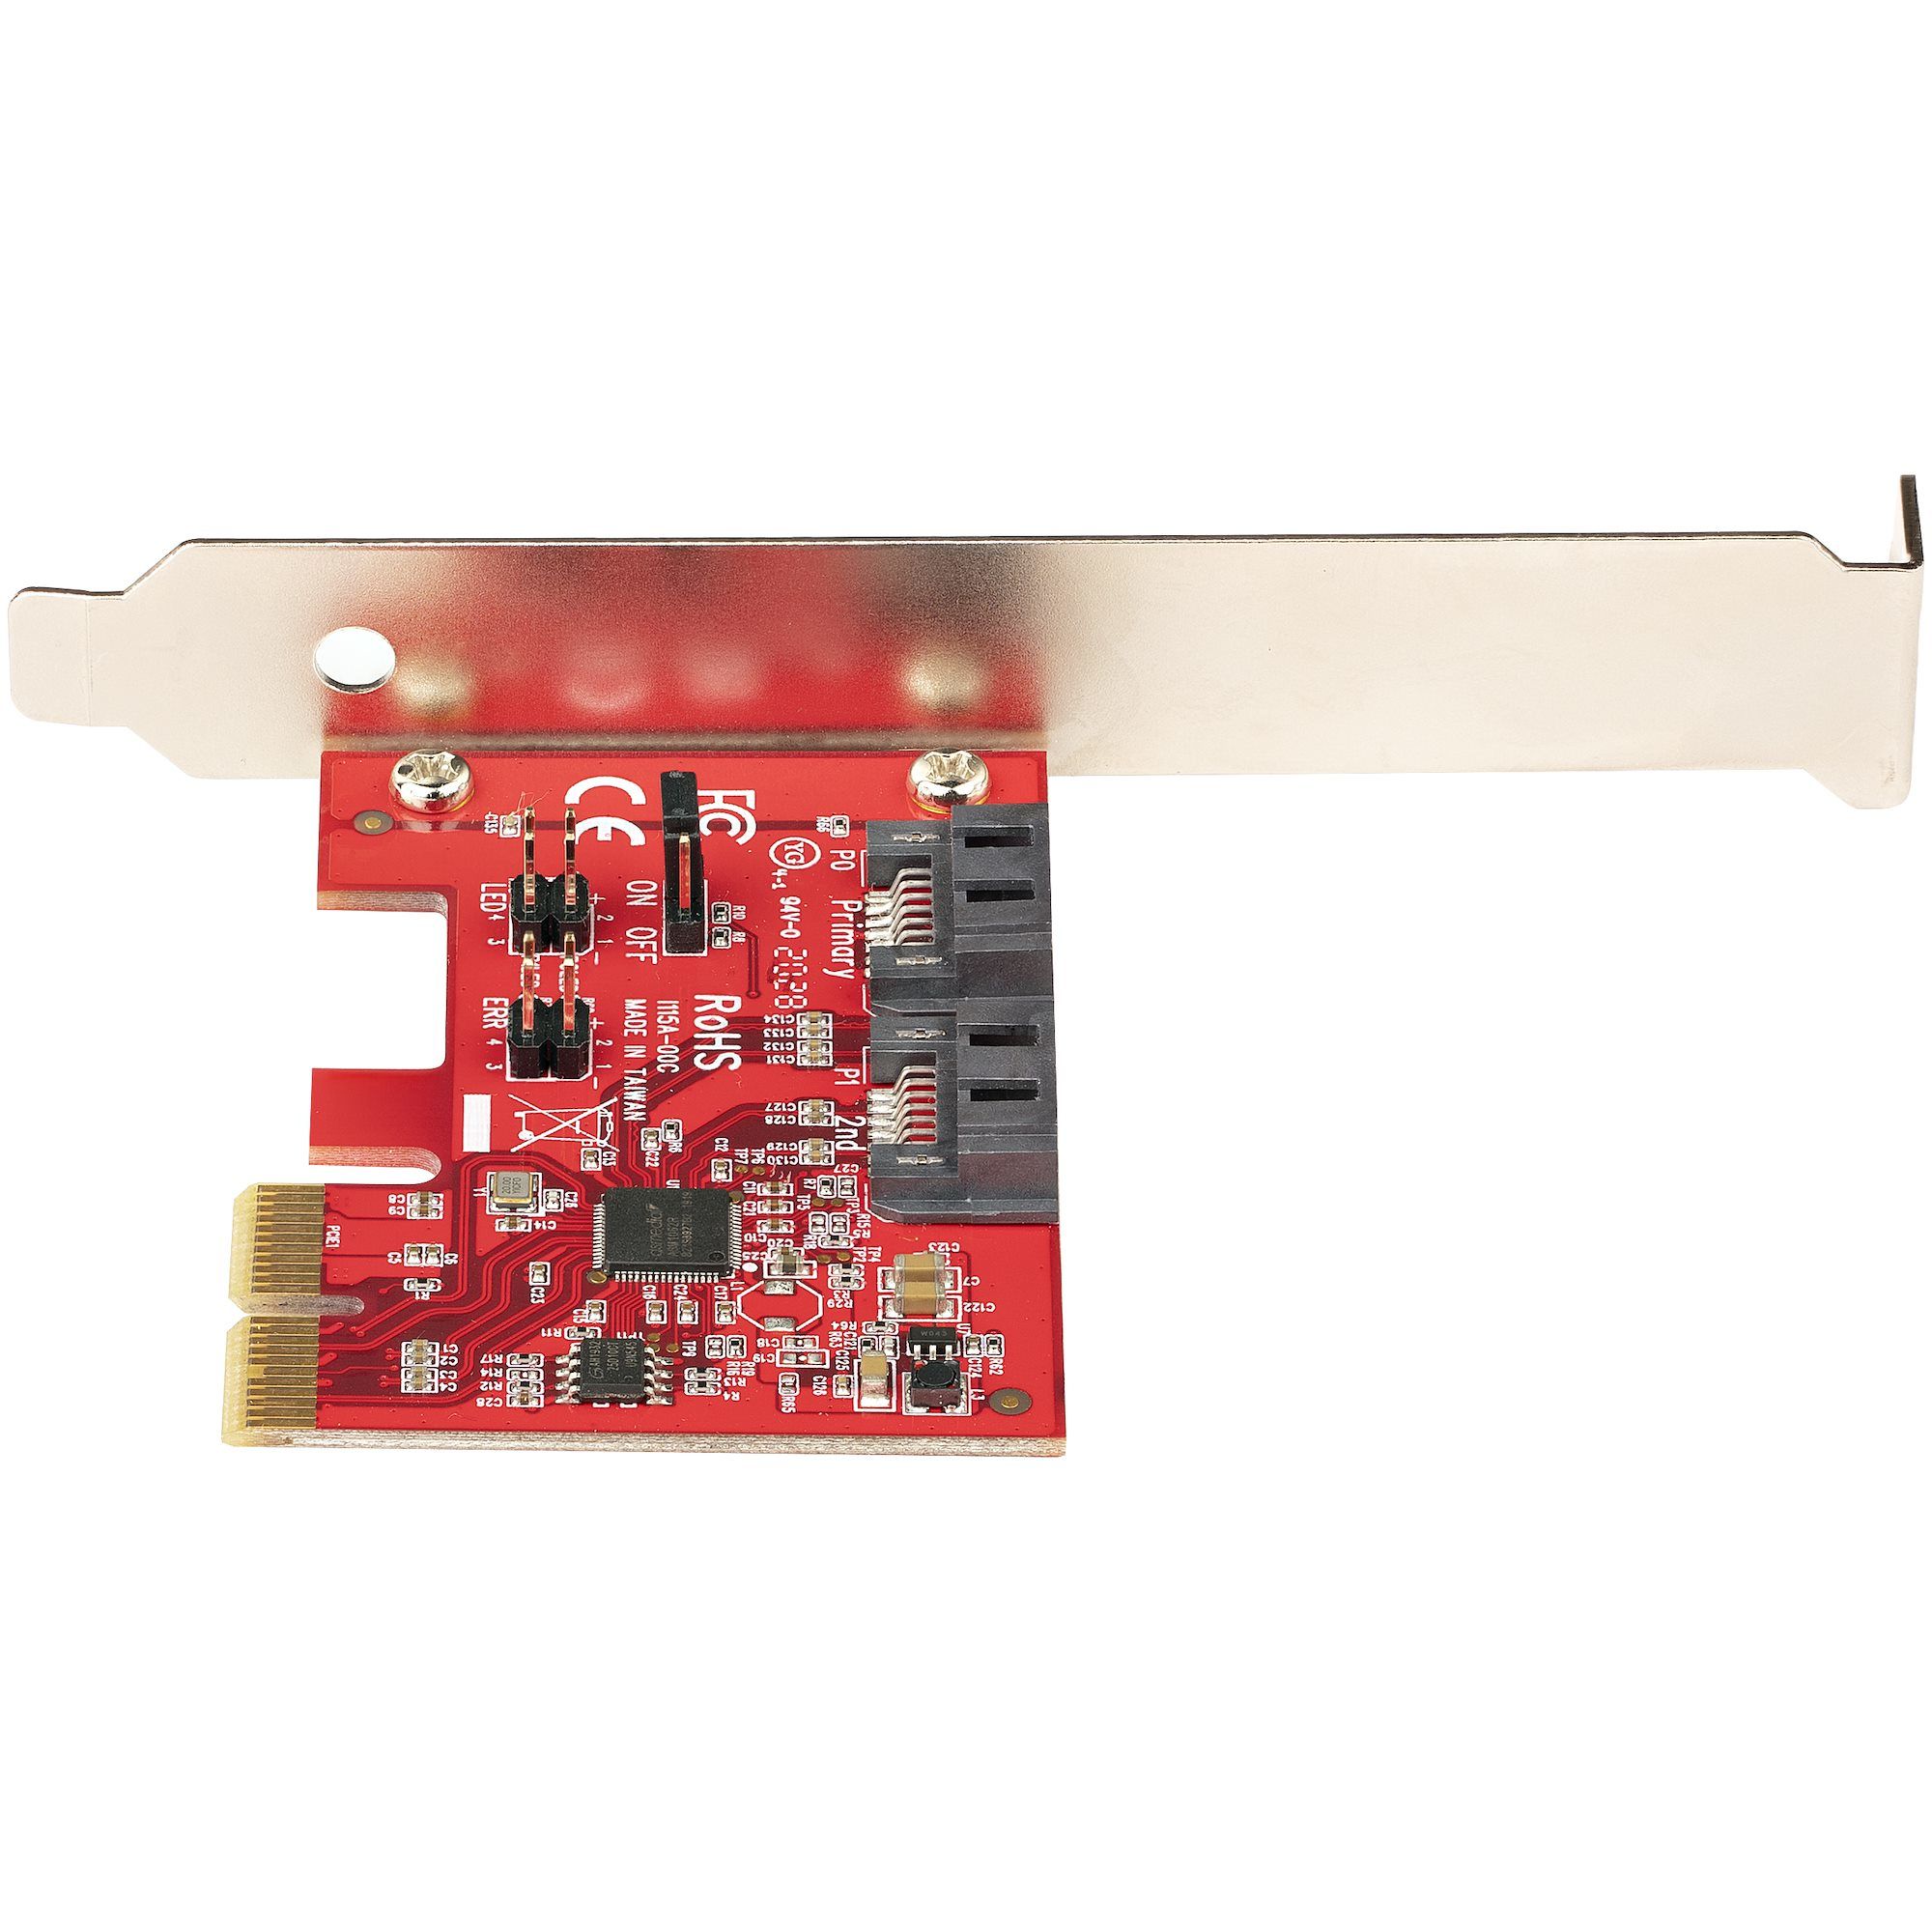 SATA III RAID PCIE CARD 2PT/._4